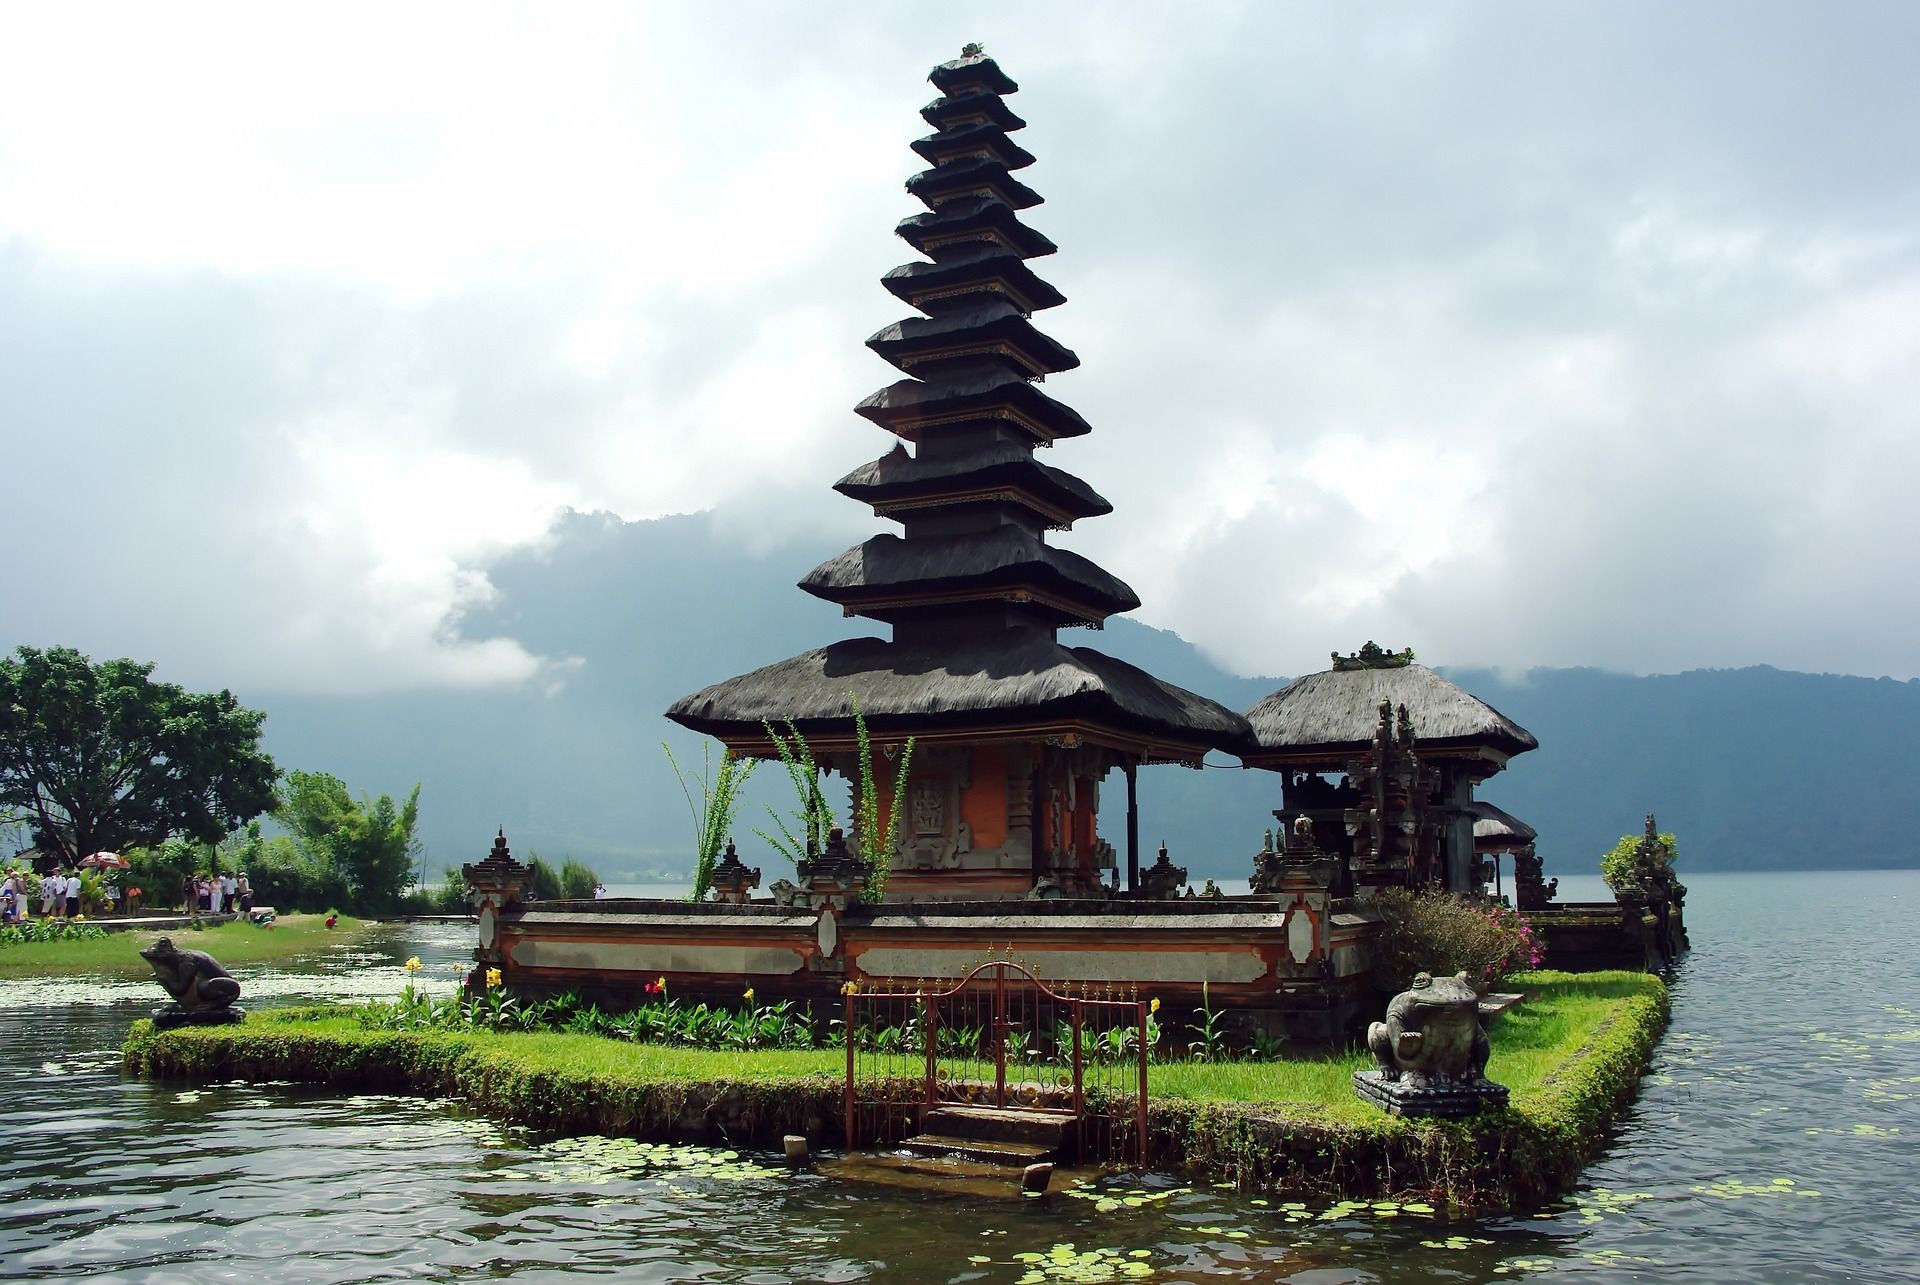 Laissez-vous surprendre par les paysages époustouflants de Bali - les offres croisières last minute 2018